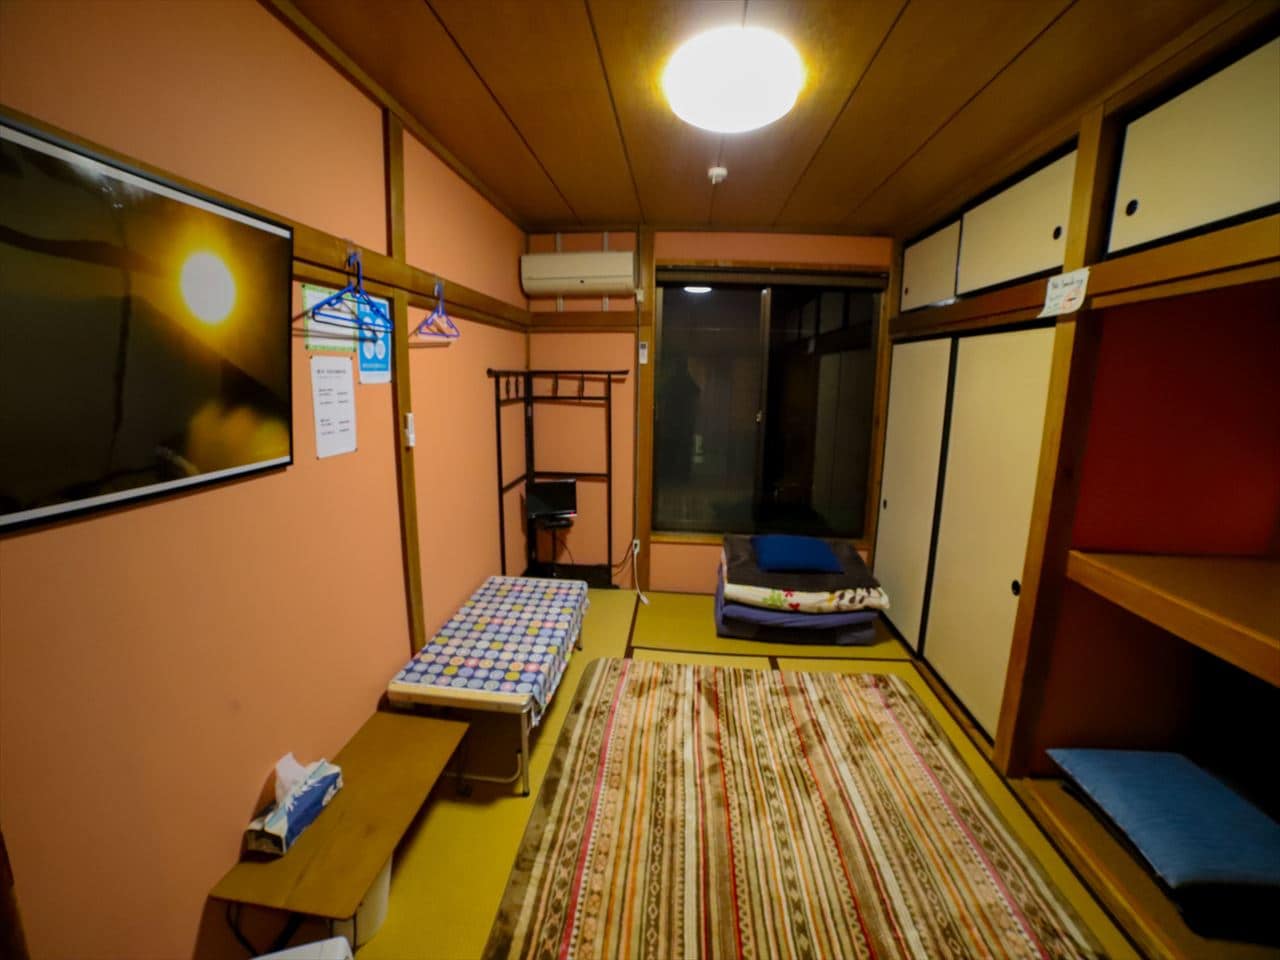 Kamar bergaya Jepang di lantai 2 gedung utama, kamar pribadi untuk satu orang